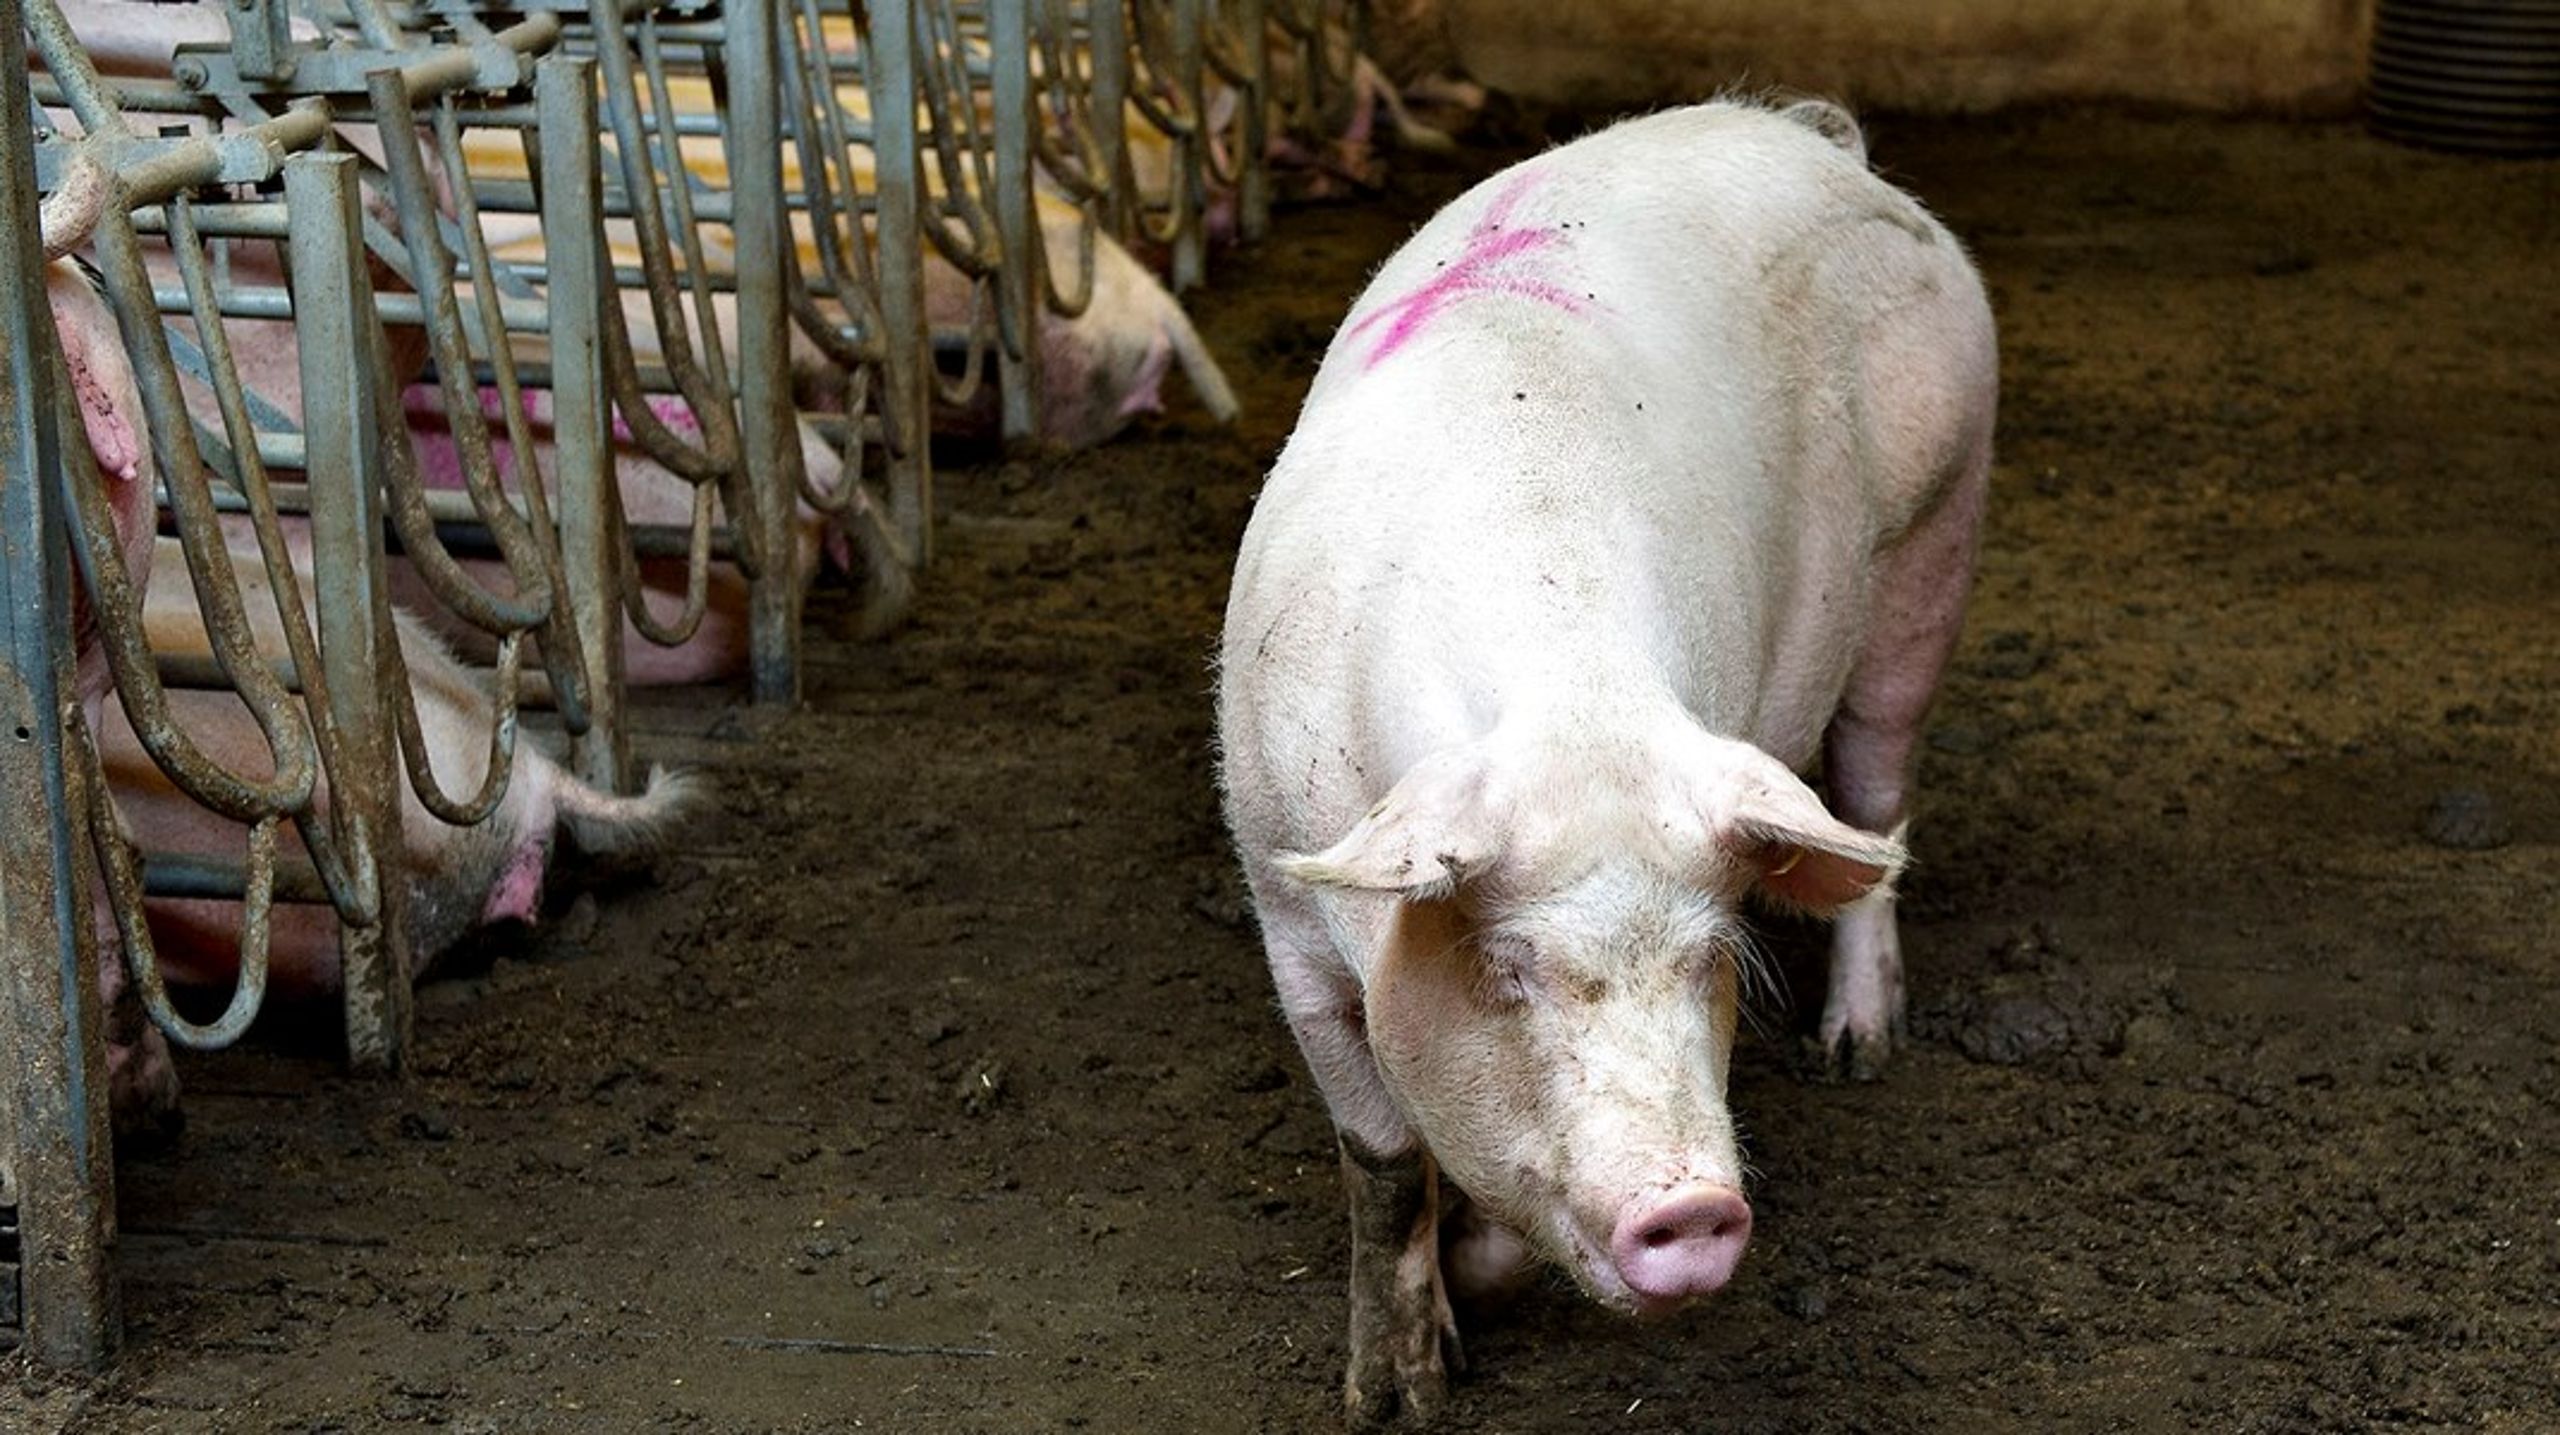 Svinekødsindustrien står for cirka 75 procent af det samlede veterinære forbrug af antibiotika, skriver Hans Jørn Kolmos og Kjeld Hansen.<br>